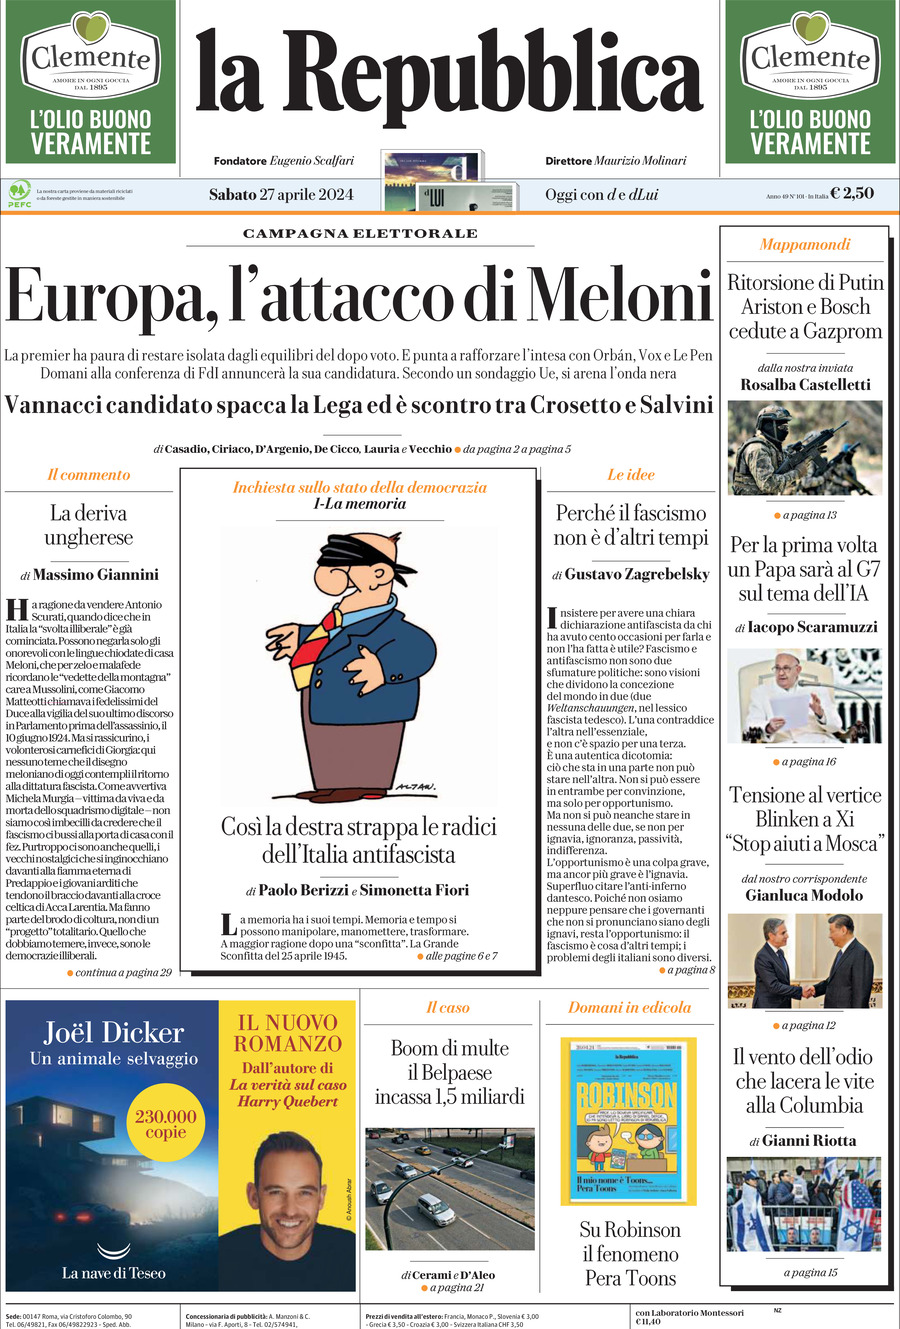 La Repubblica, prima pagina